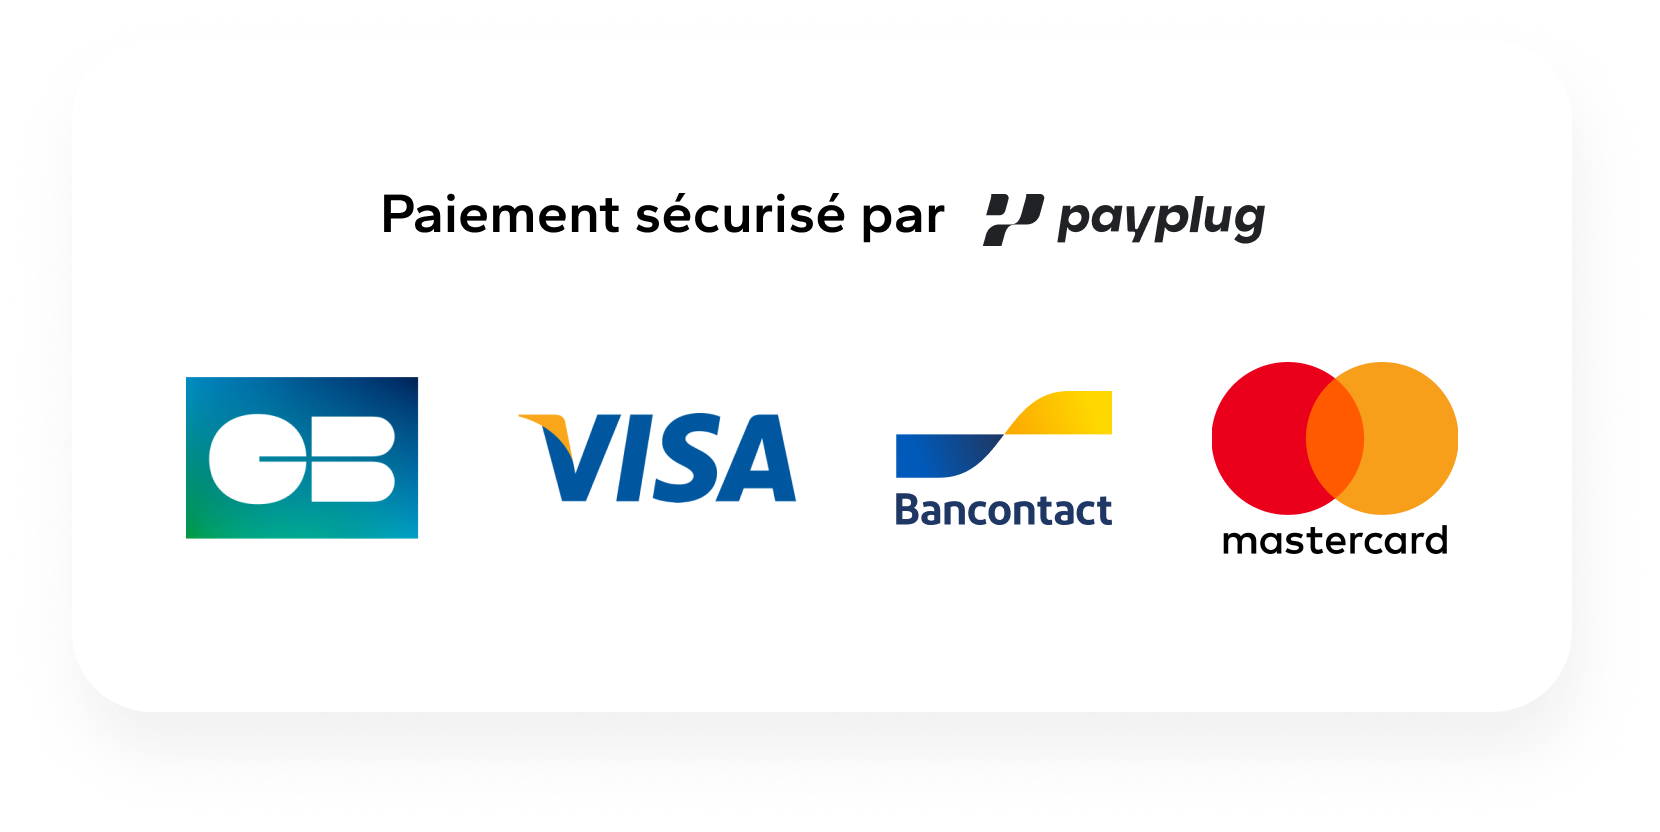 FR_visa_CB_mastercard_bancontact.png